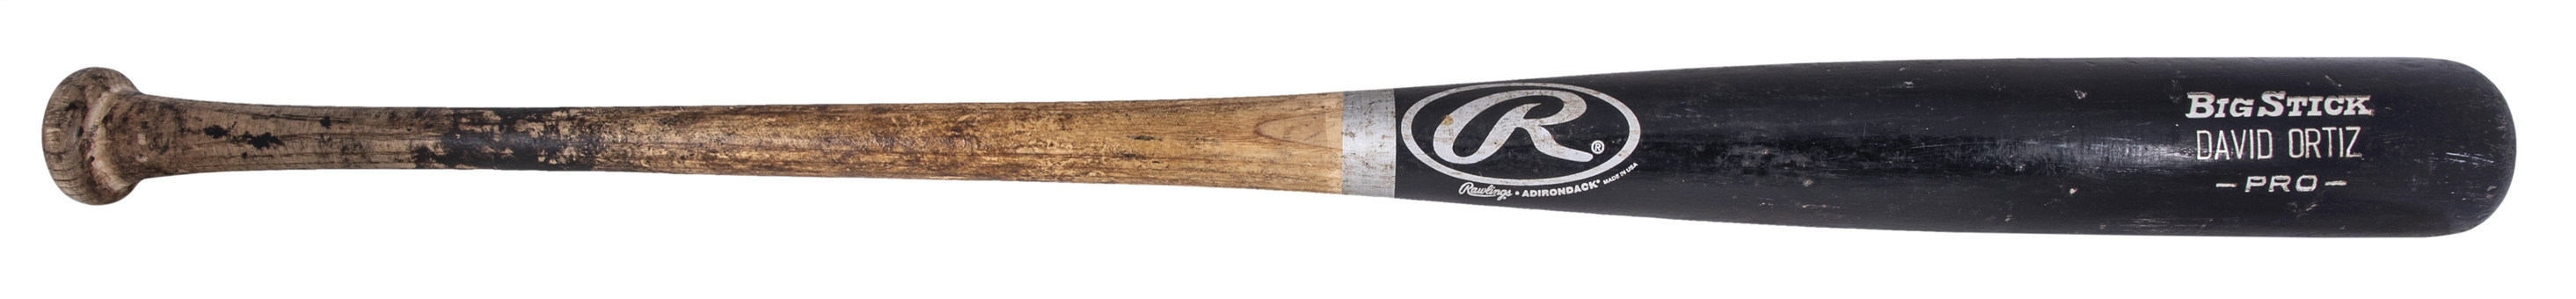 2007 David Ortiz Game Used Rawlings 456B Model Bat (PSA/DNA GU 9.5)